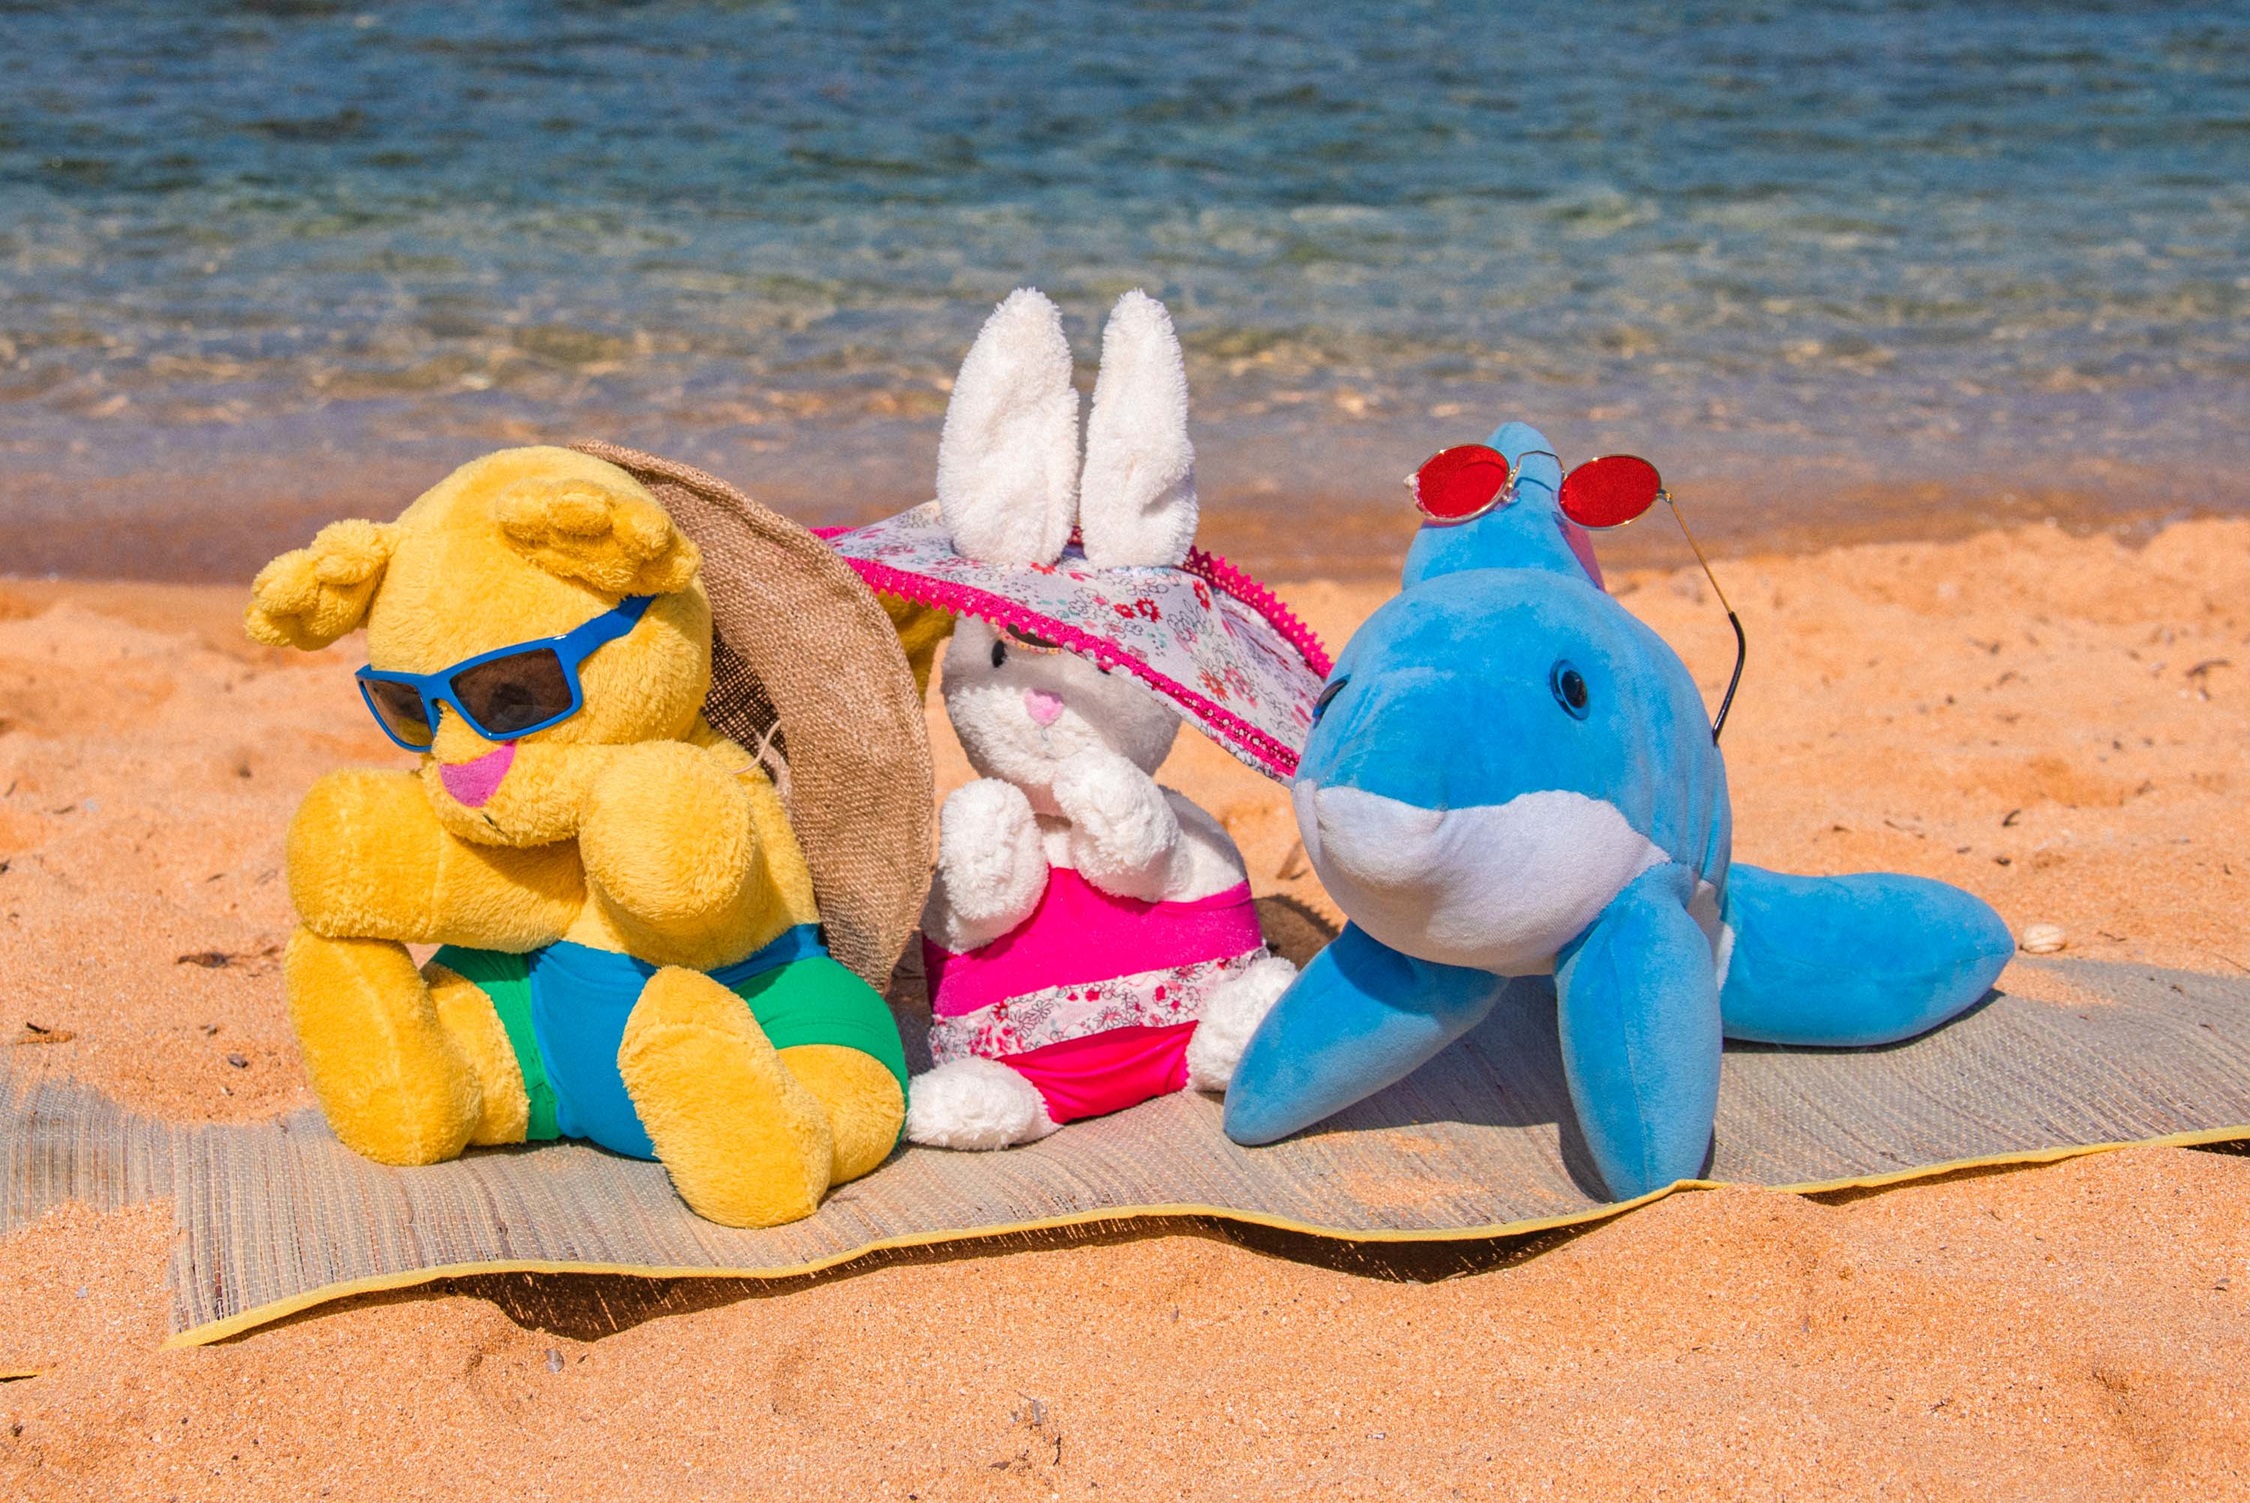 Drie knuffels liggen op een handdoek op het strand